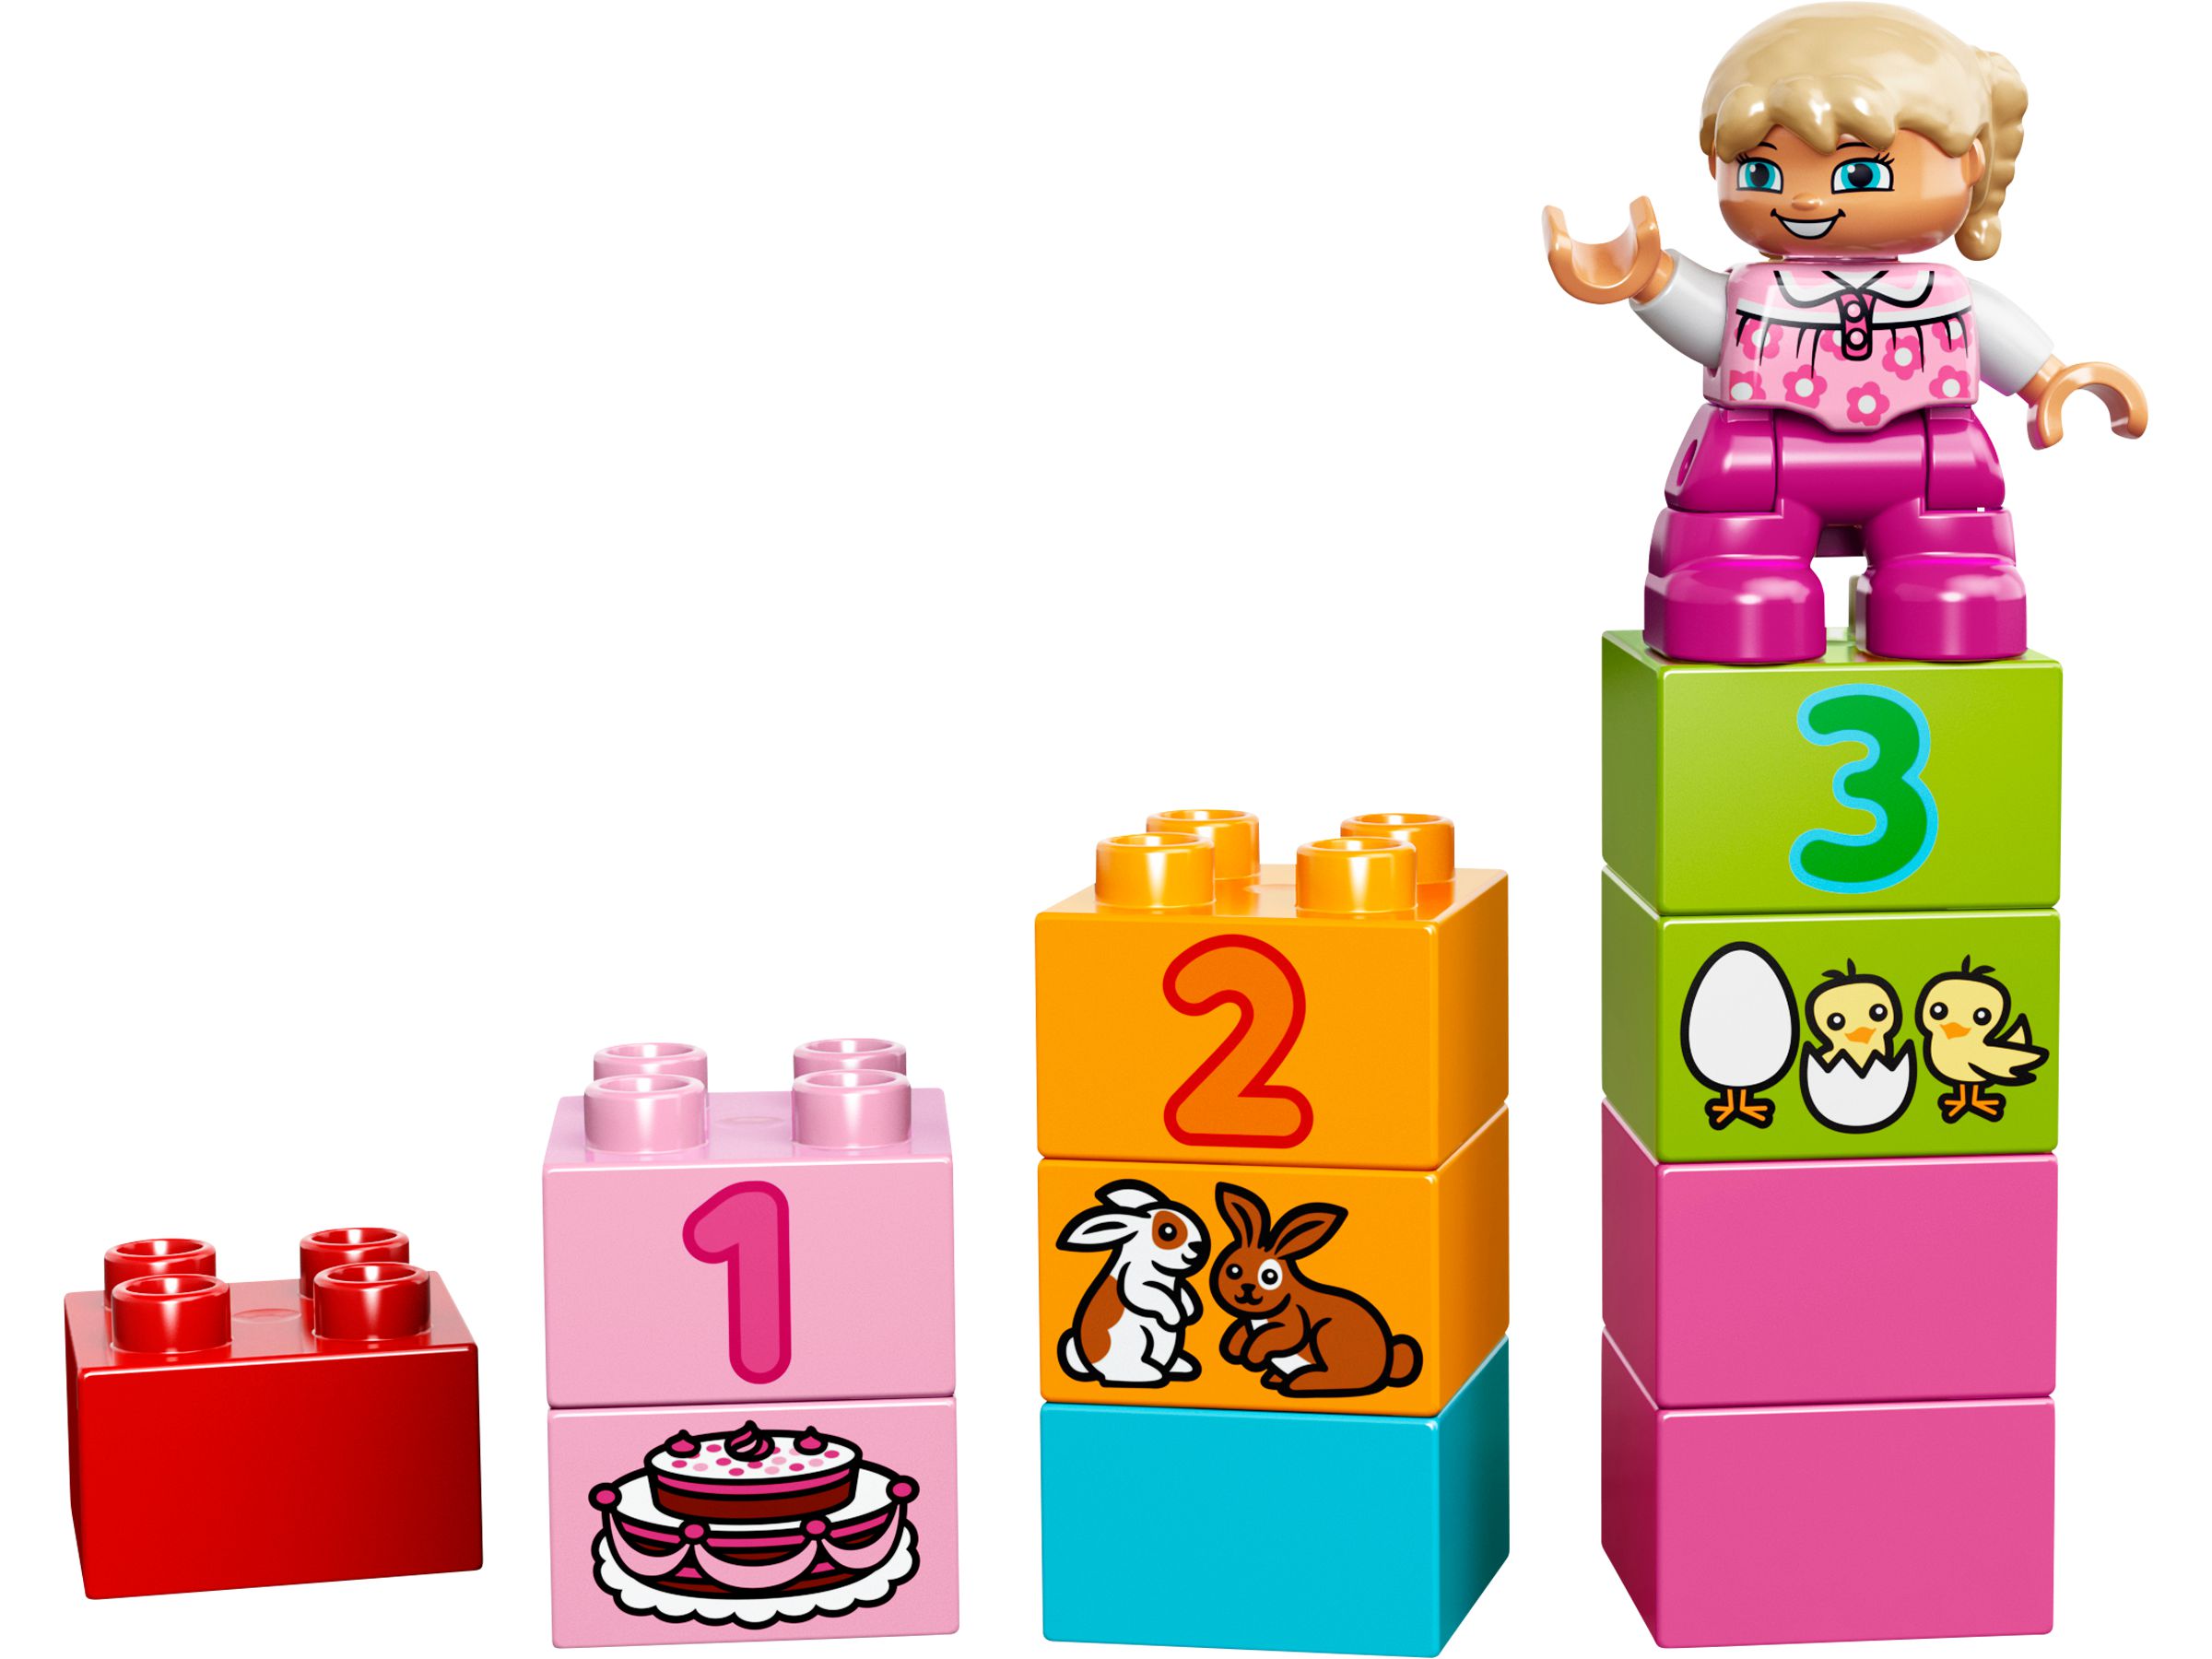 LEGO Duplo 10571 LEGO® DUPLO® Große Steinebox Mädchen LEGO_10571_alt8.jpg